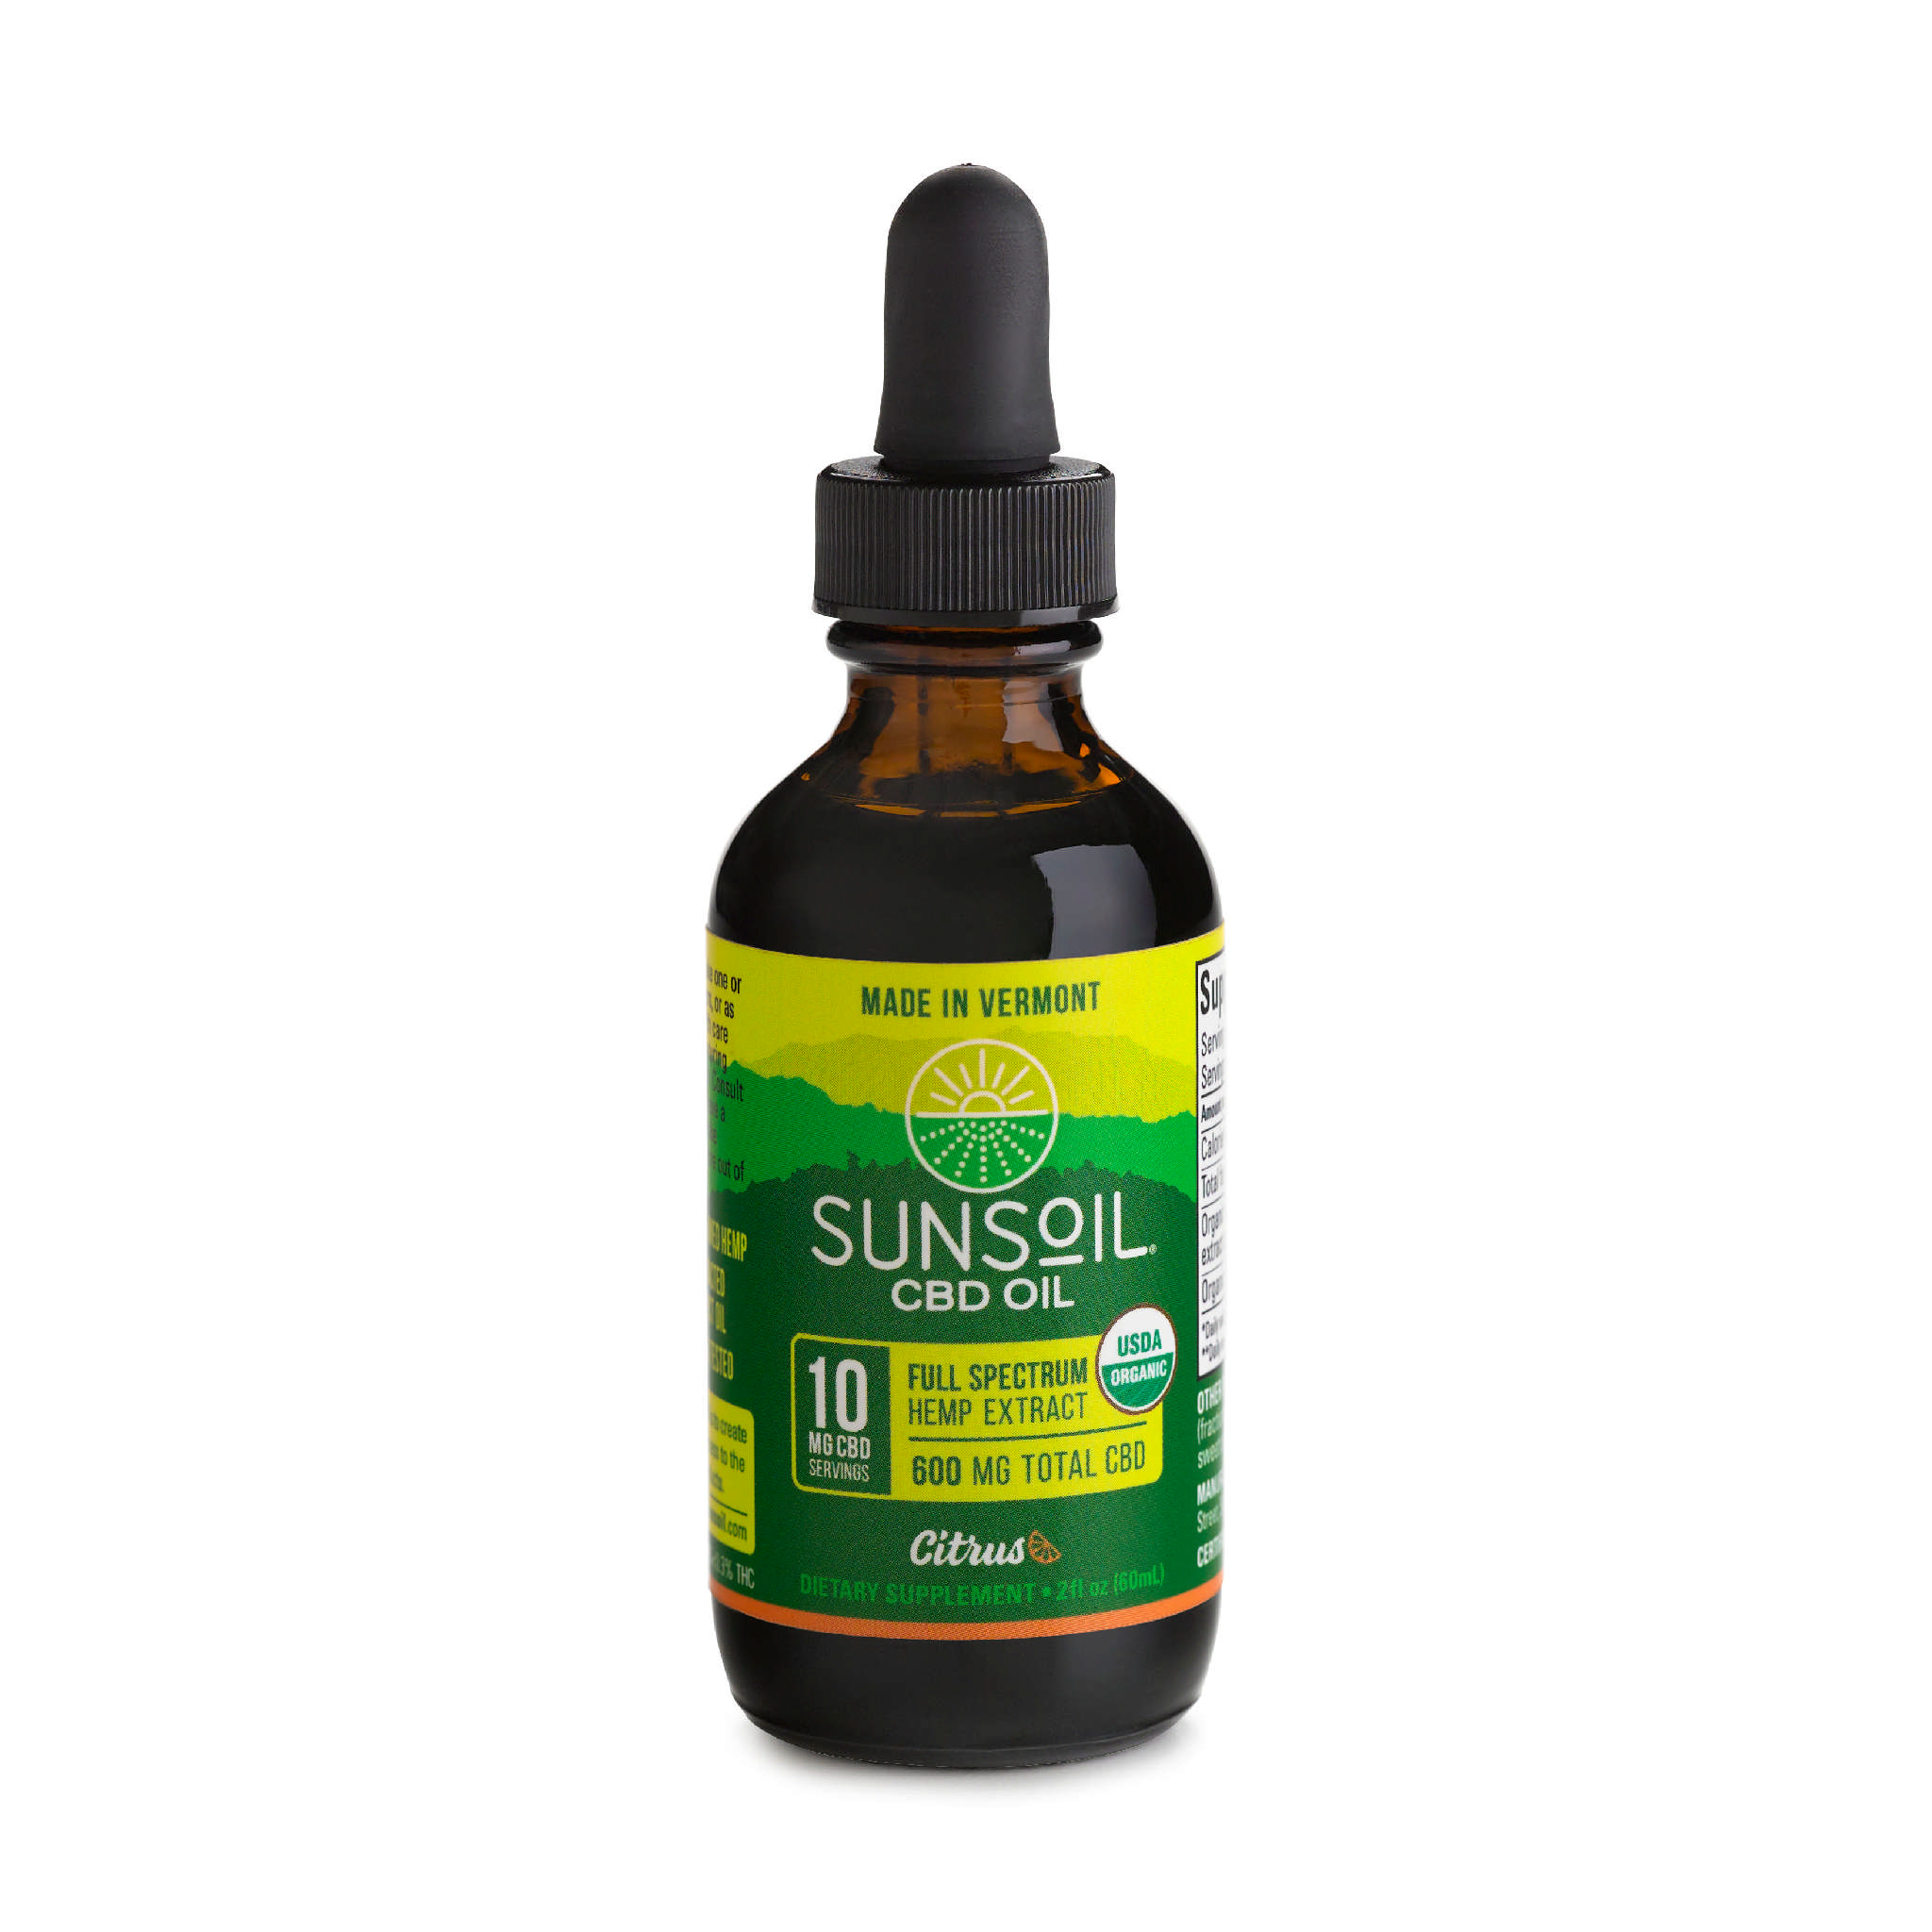 Sunsoil CBD Oil - Cbd Oil 10 mg Citrus